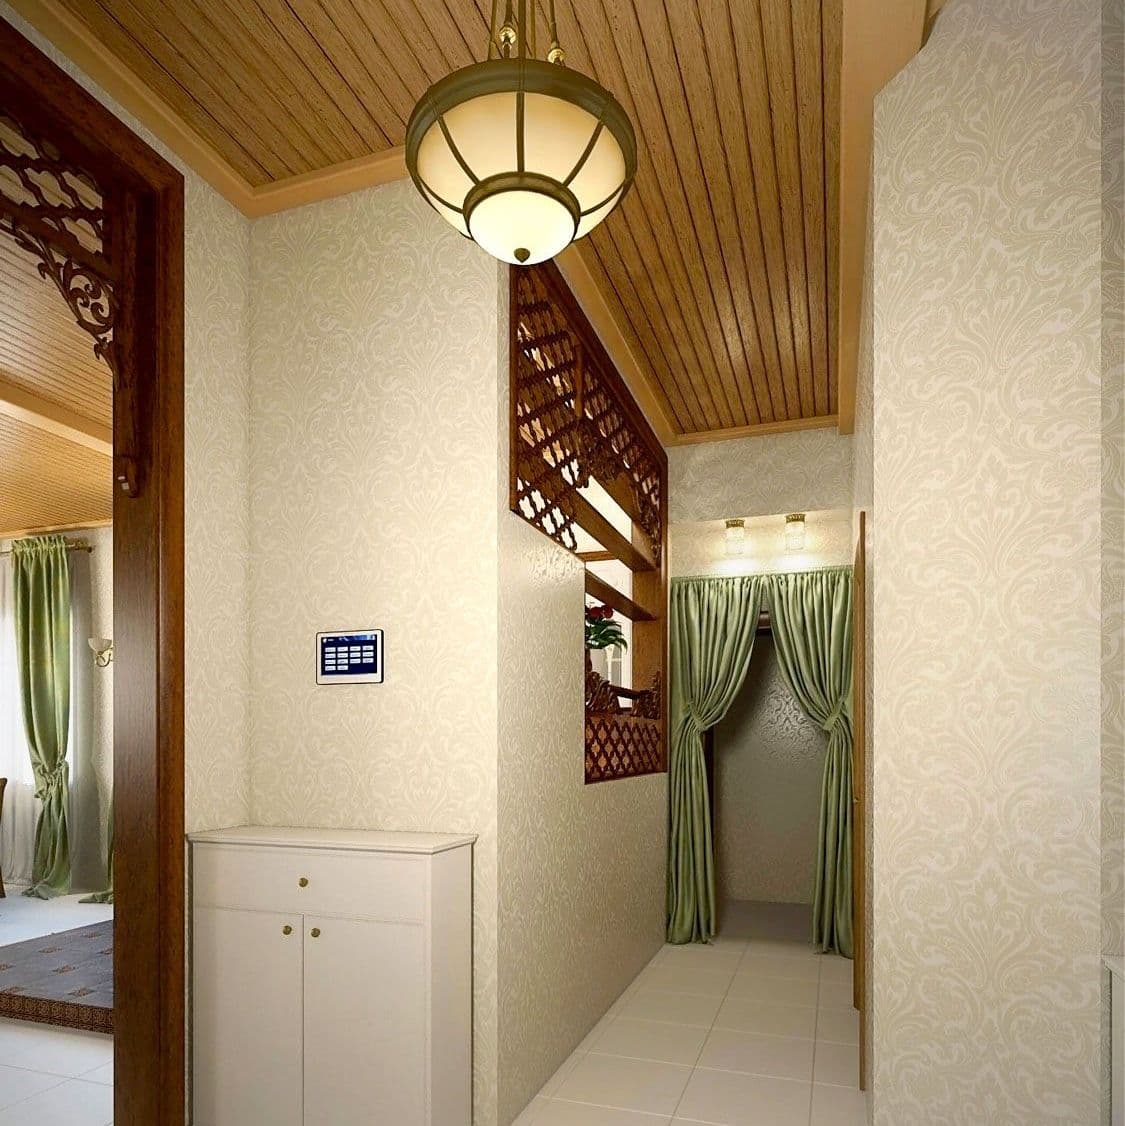 Дизайн прихожей дома в классическом русском стиле, с деревянным потолком